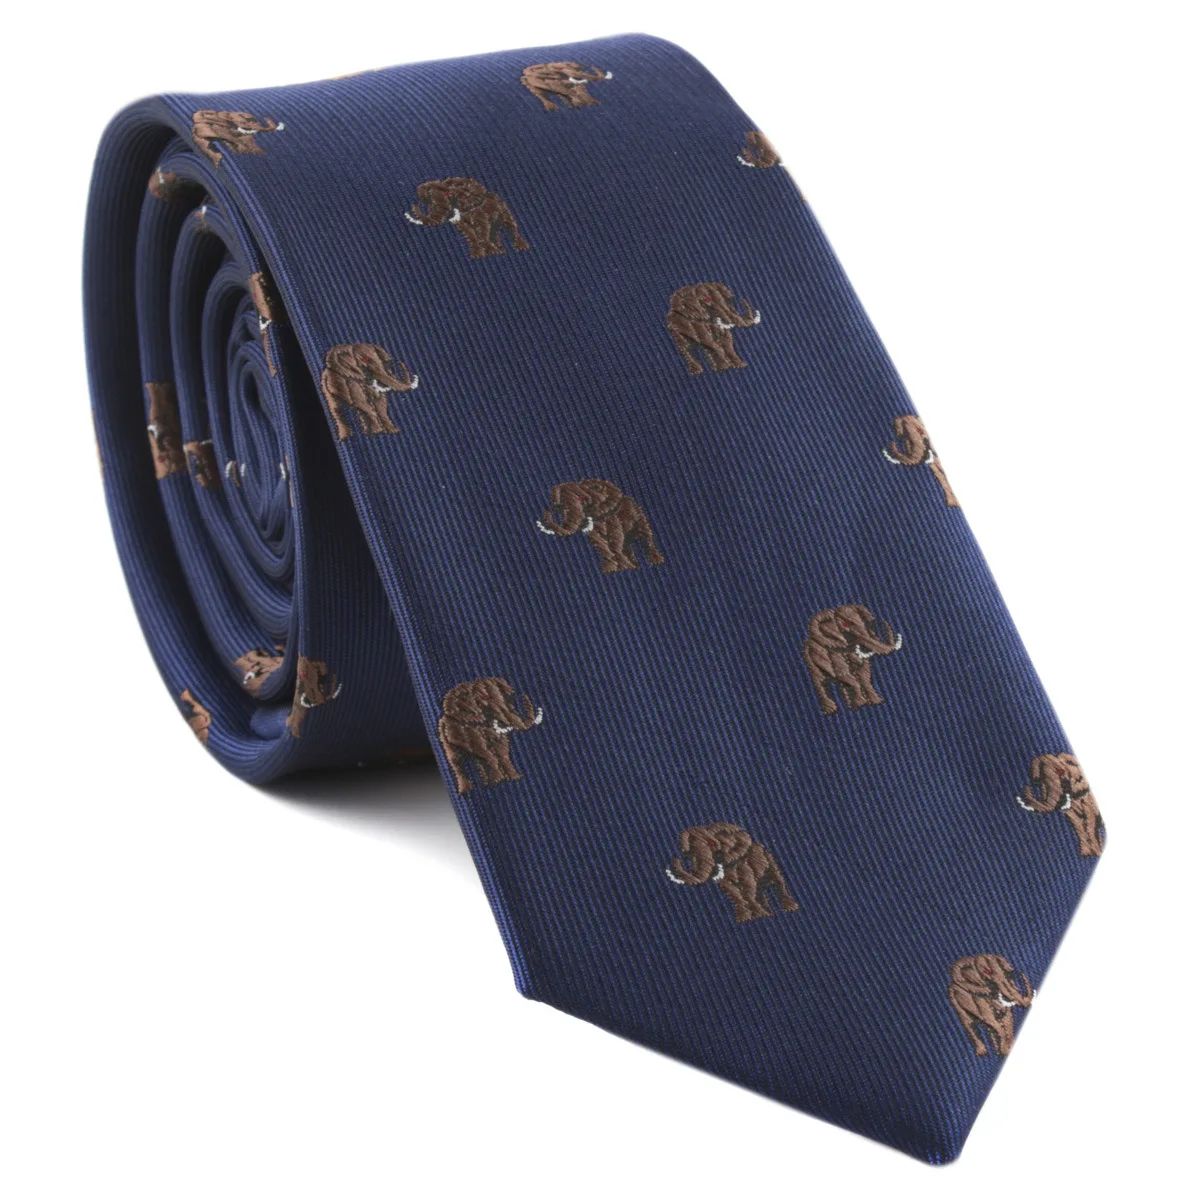 Mantieqingway шеи галстуки для мужчин полиэстер шелк окрашенные жаккардовые Зебра слон шаблон галстук случайные бизнес животных шеи галстуки